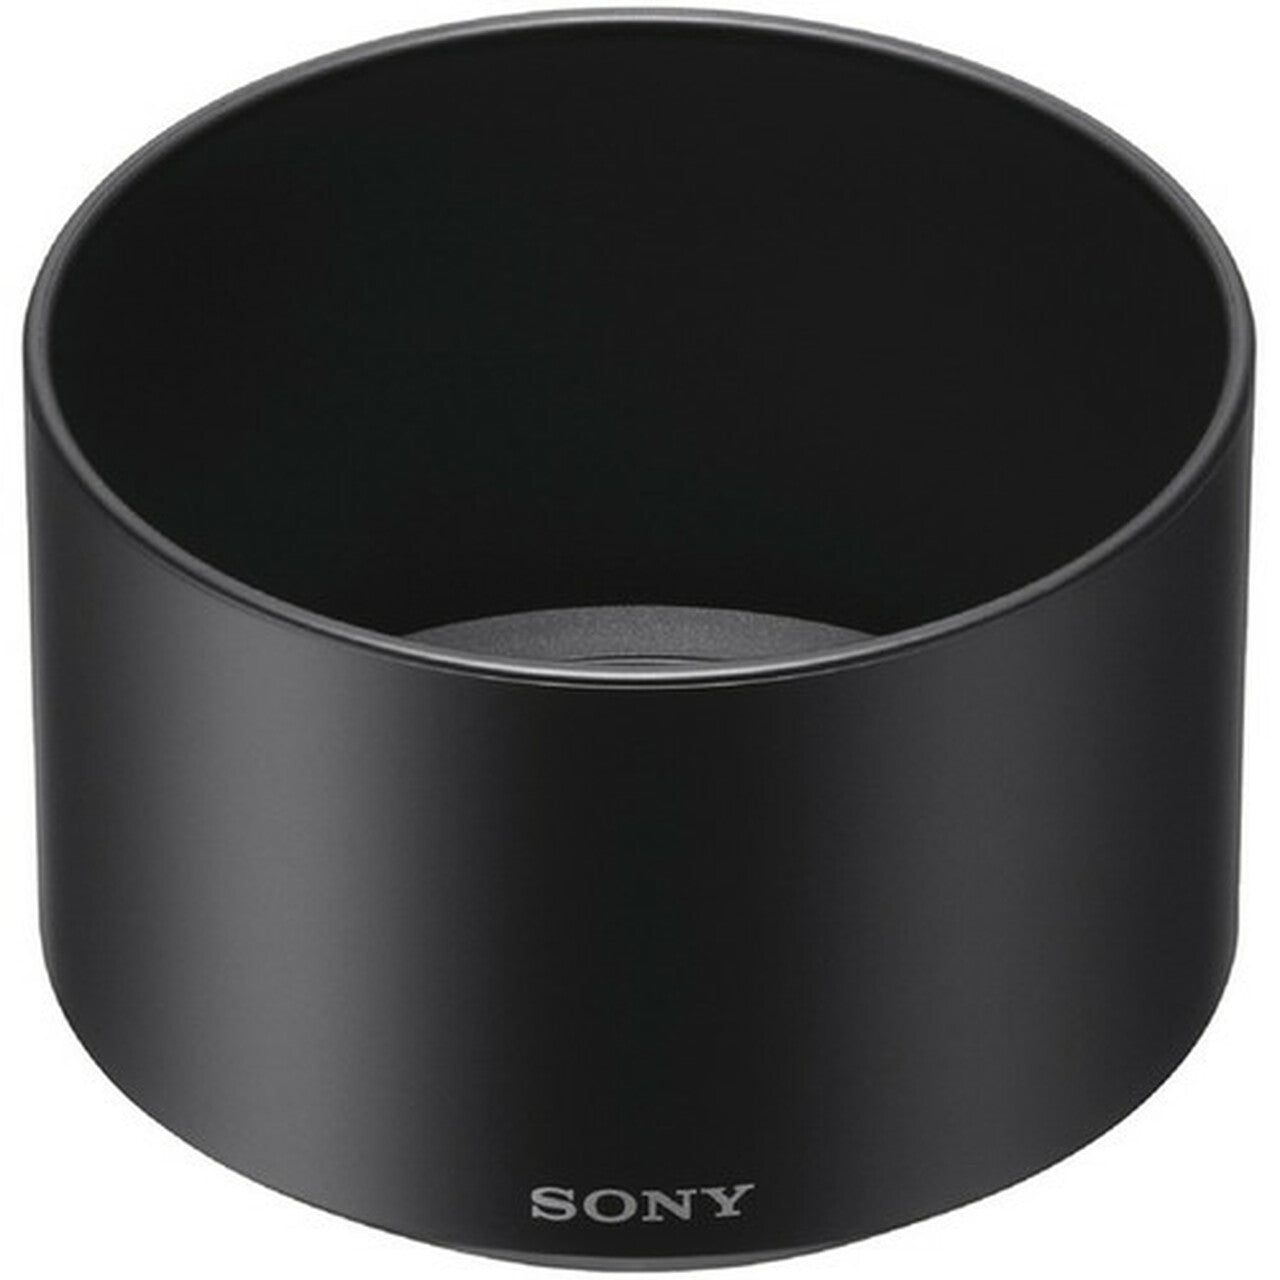 Sony ALC-SH116 Lens Hood for SEL50F18